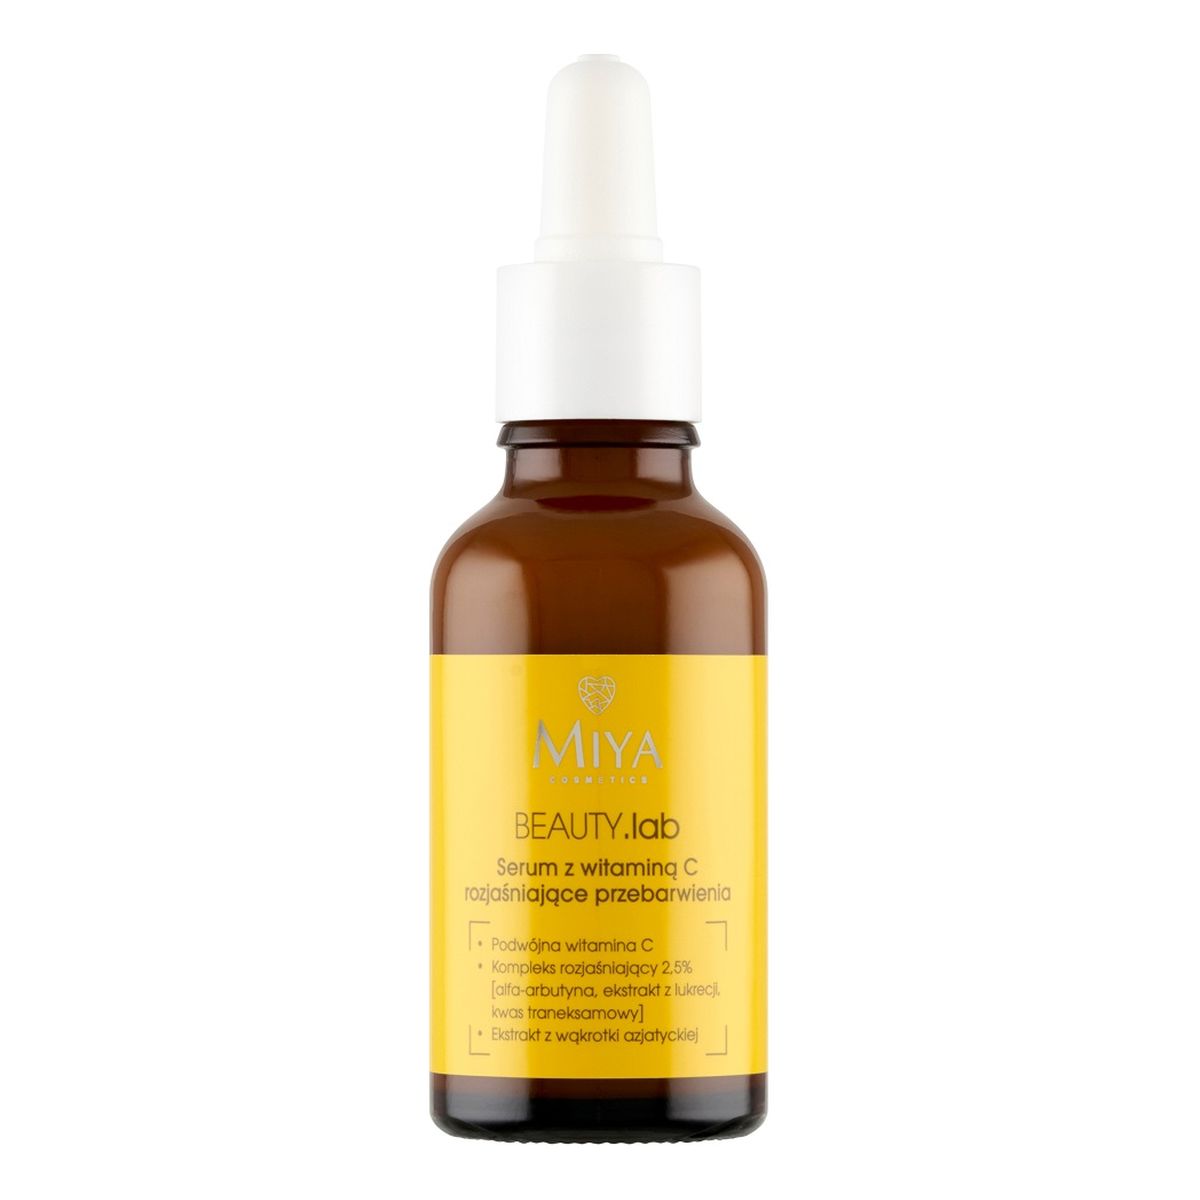 Miya Cosmetics Beauty.lab serum z witaminą c rozjaśniające przebarwienia 30ml